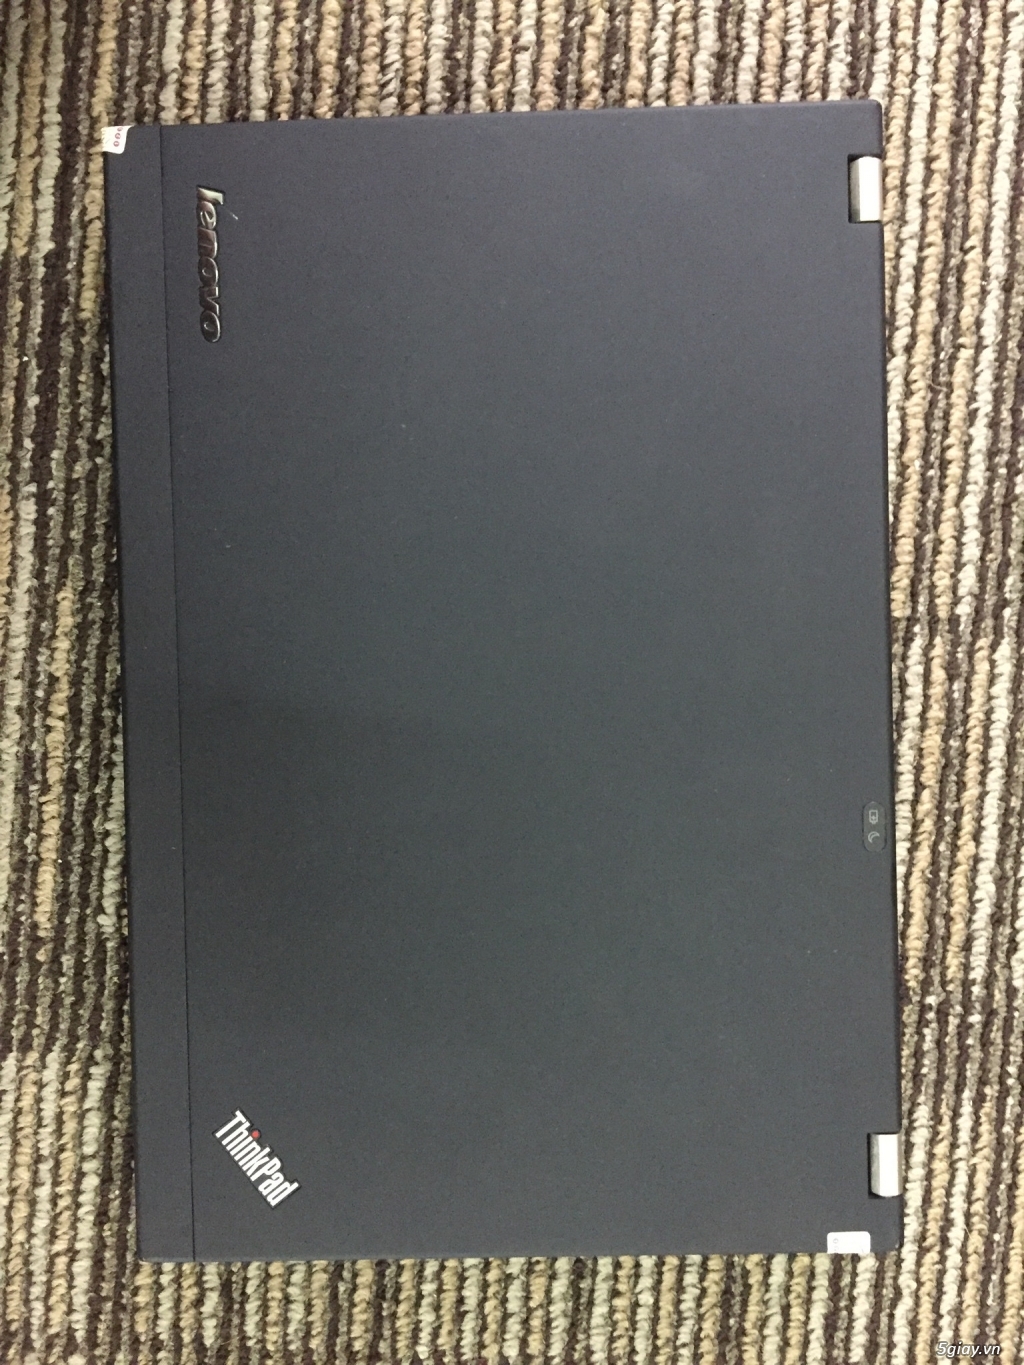 Xả lô Lenovo Thinkpad X220 nguyên zin - 1